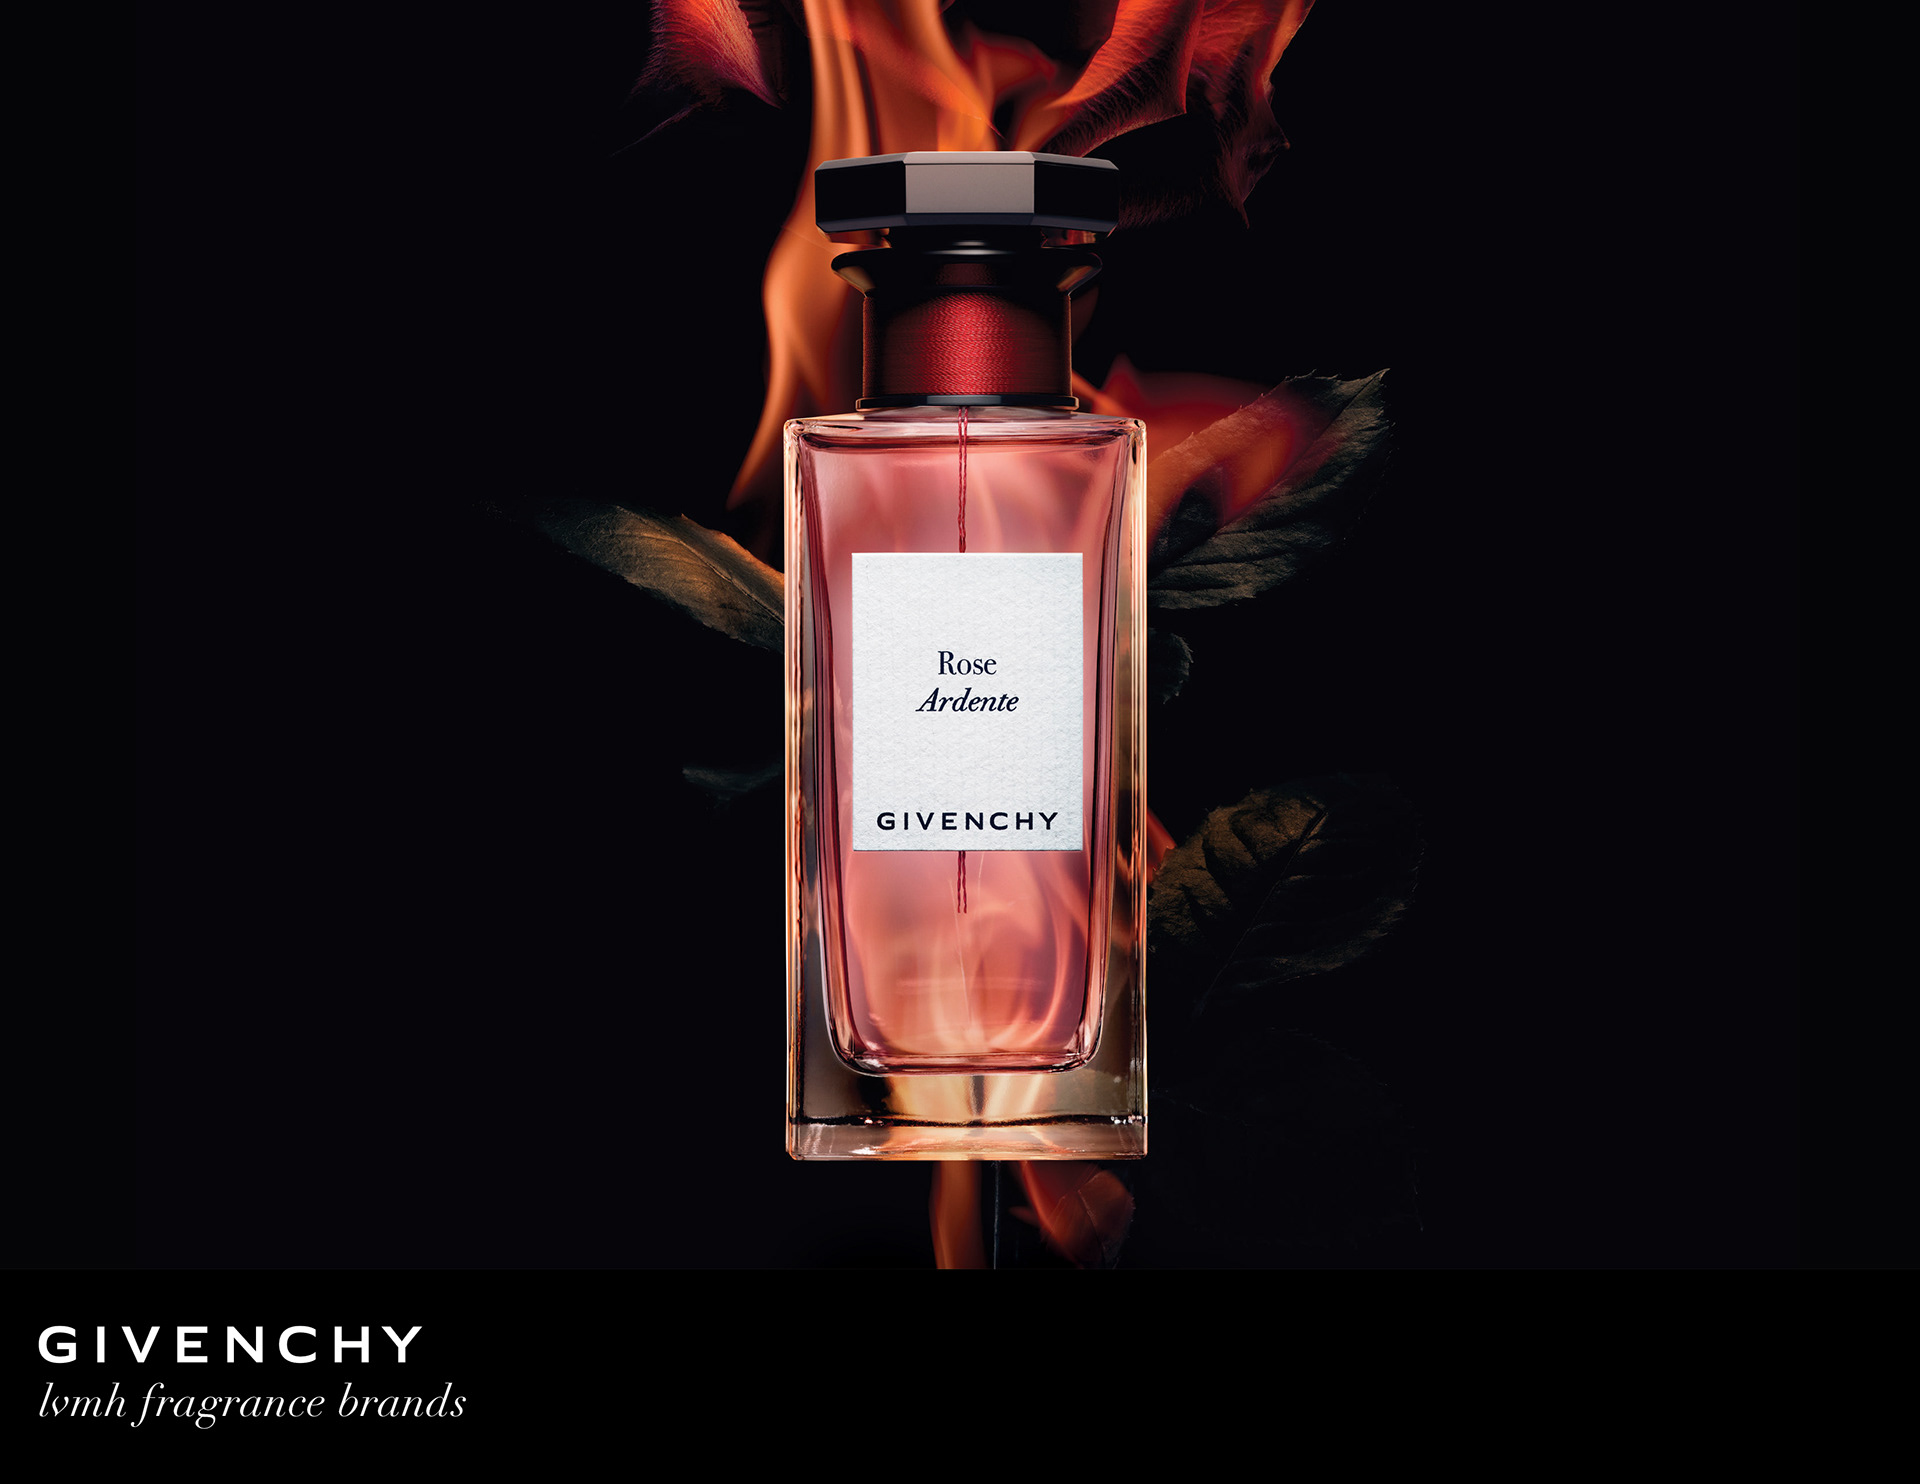 Claibourn Hamilton - Givenchy Beauty | LVMH Fragrance Brands